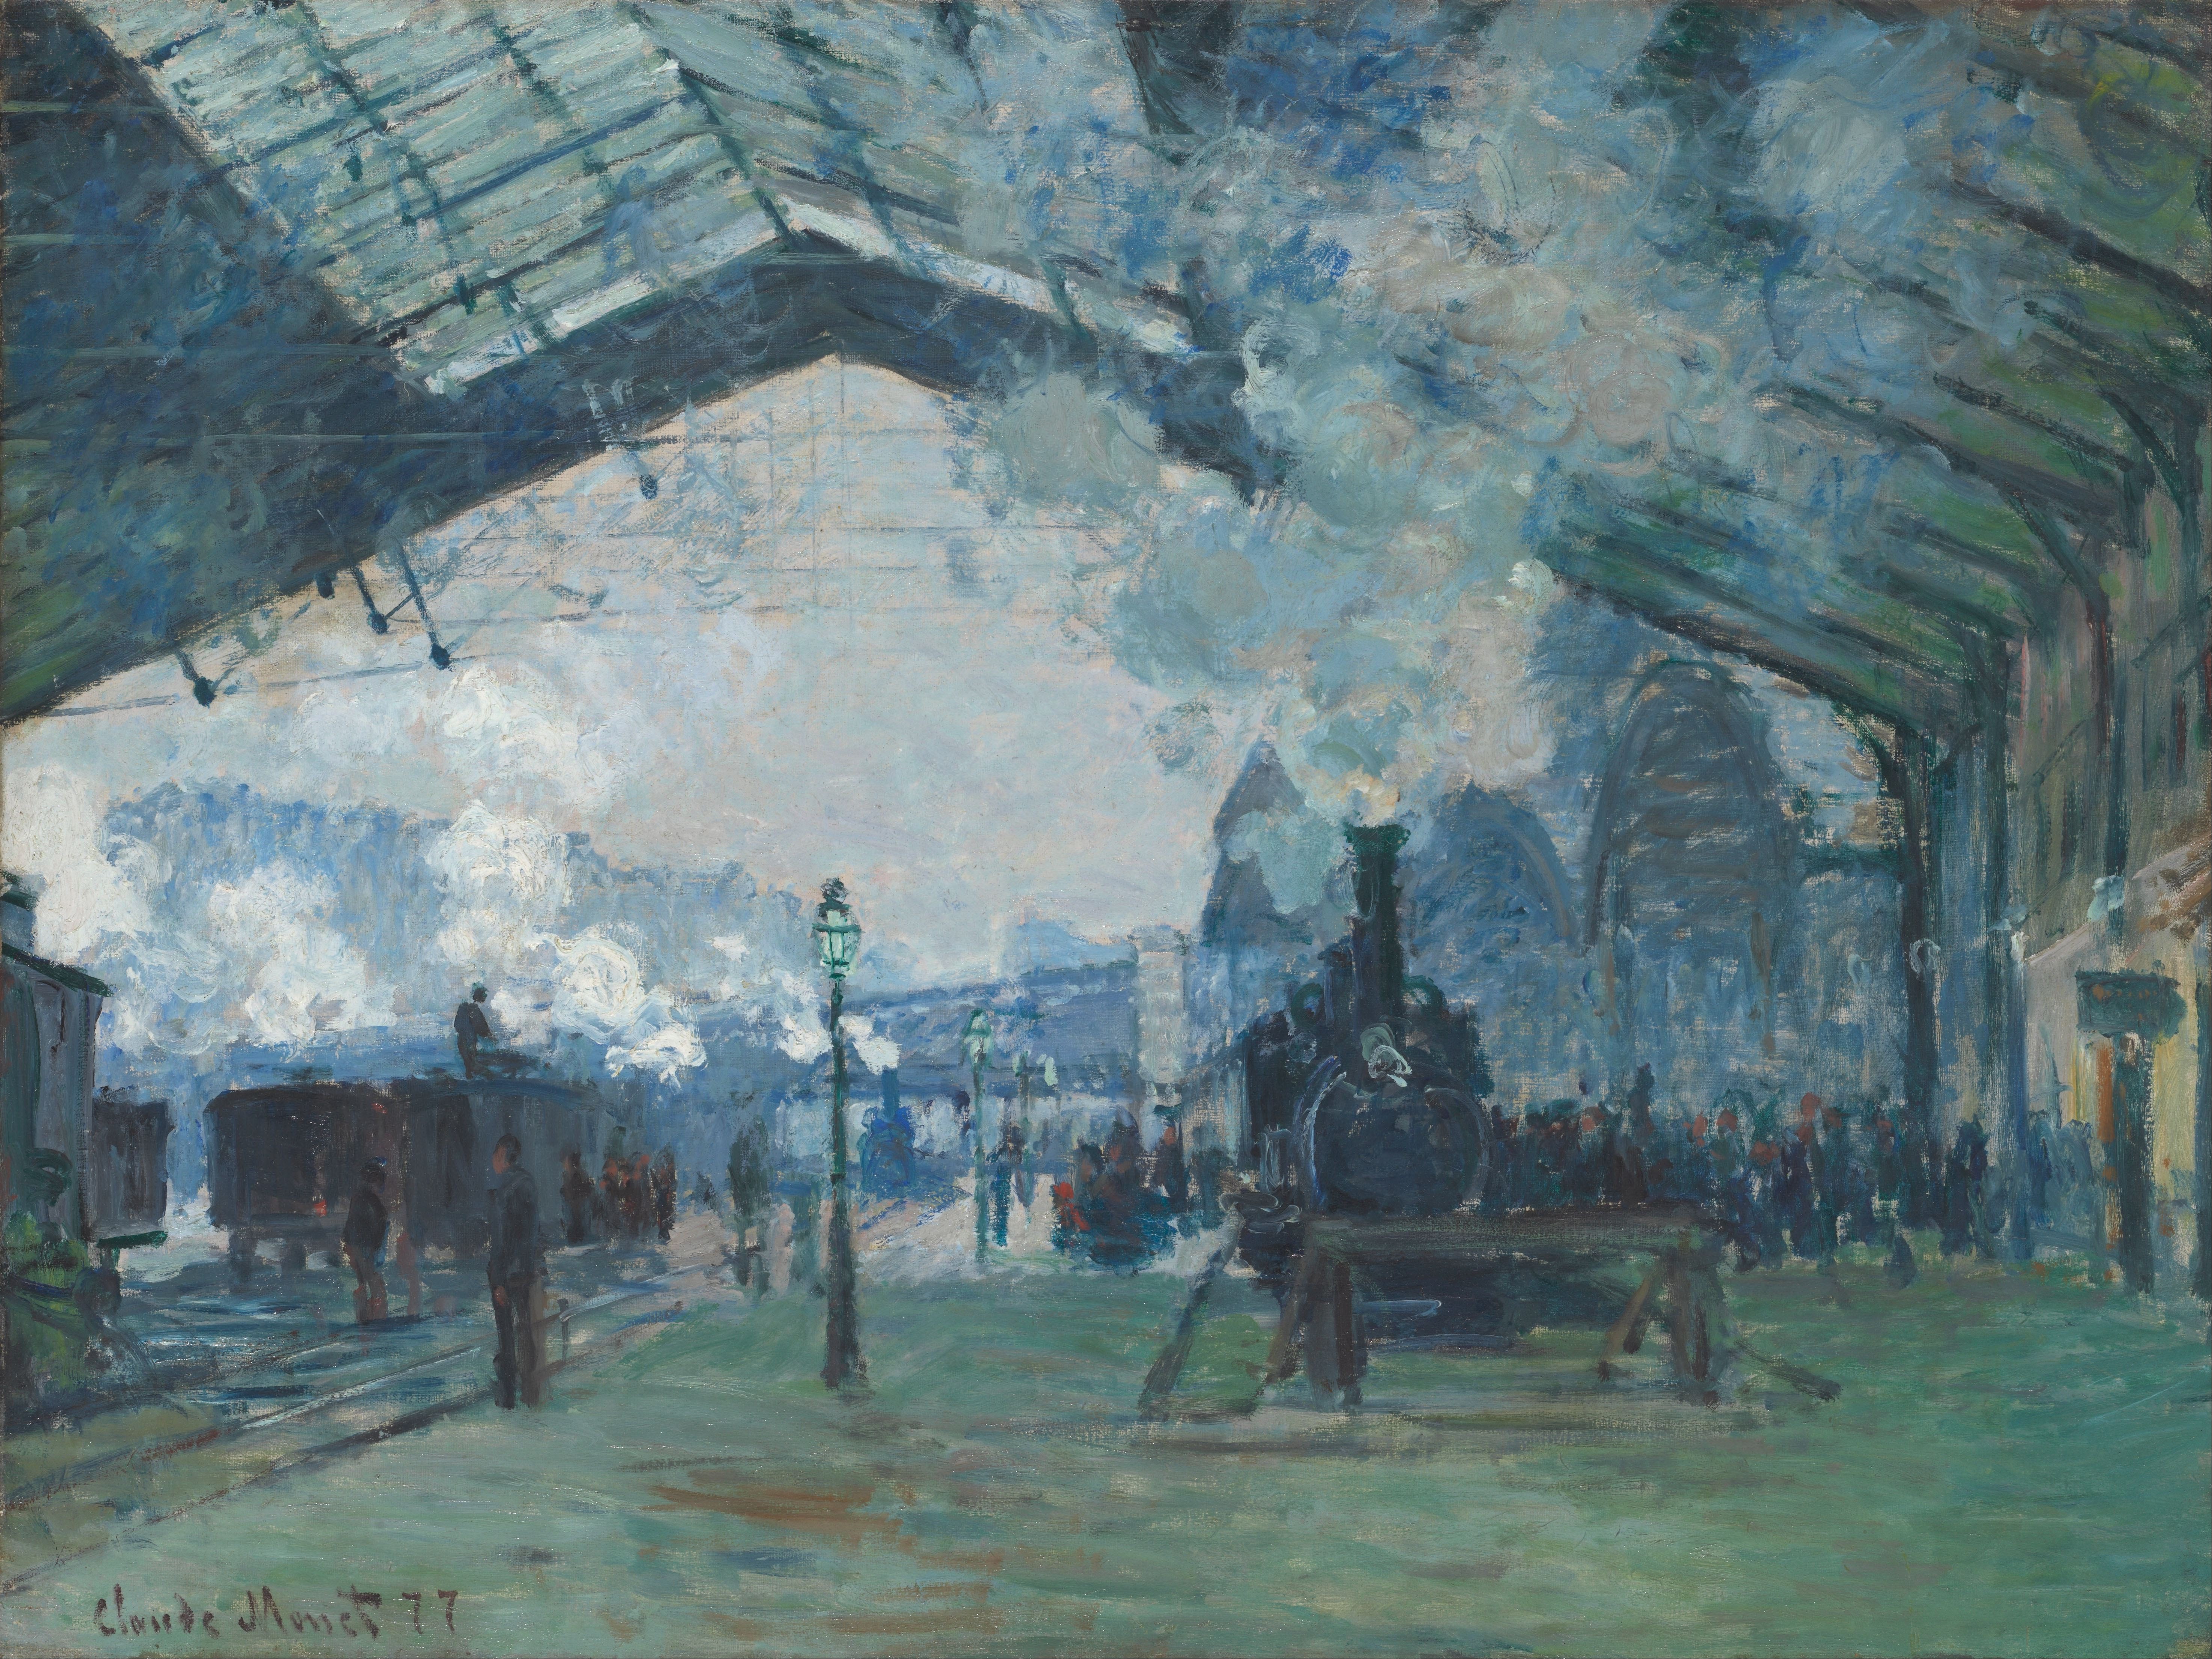 Artık saniyeler, sanayileşen zaman, Monet'in dumanları